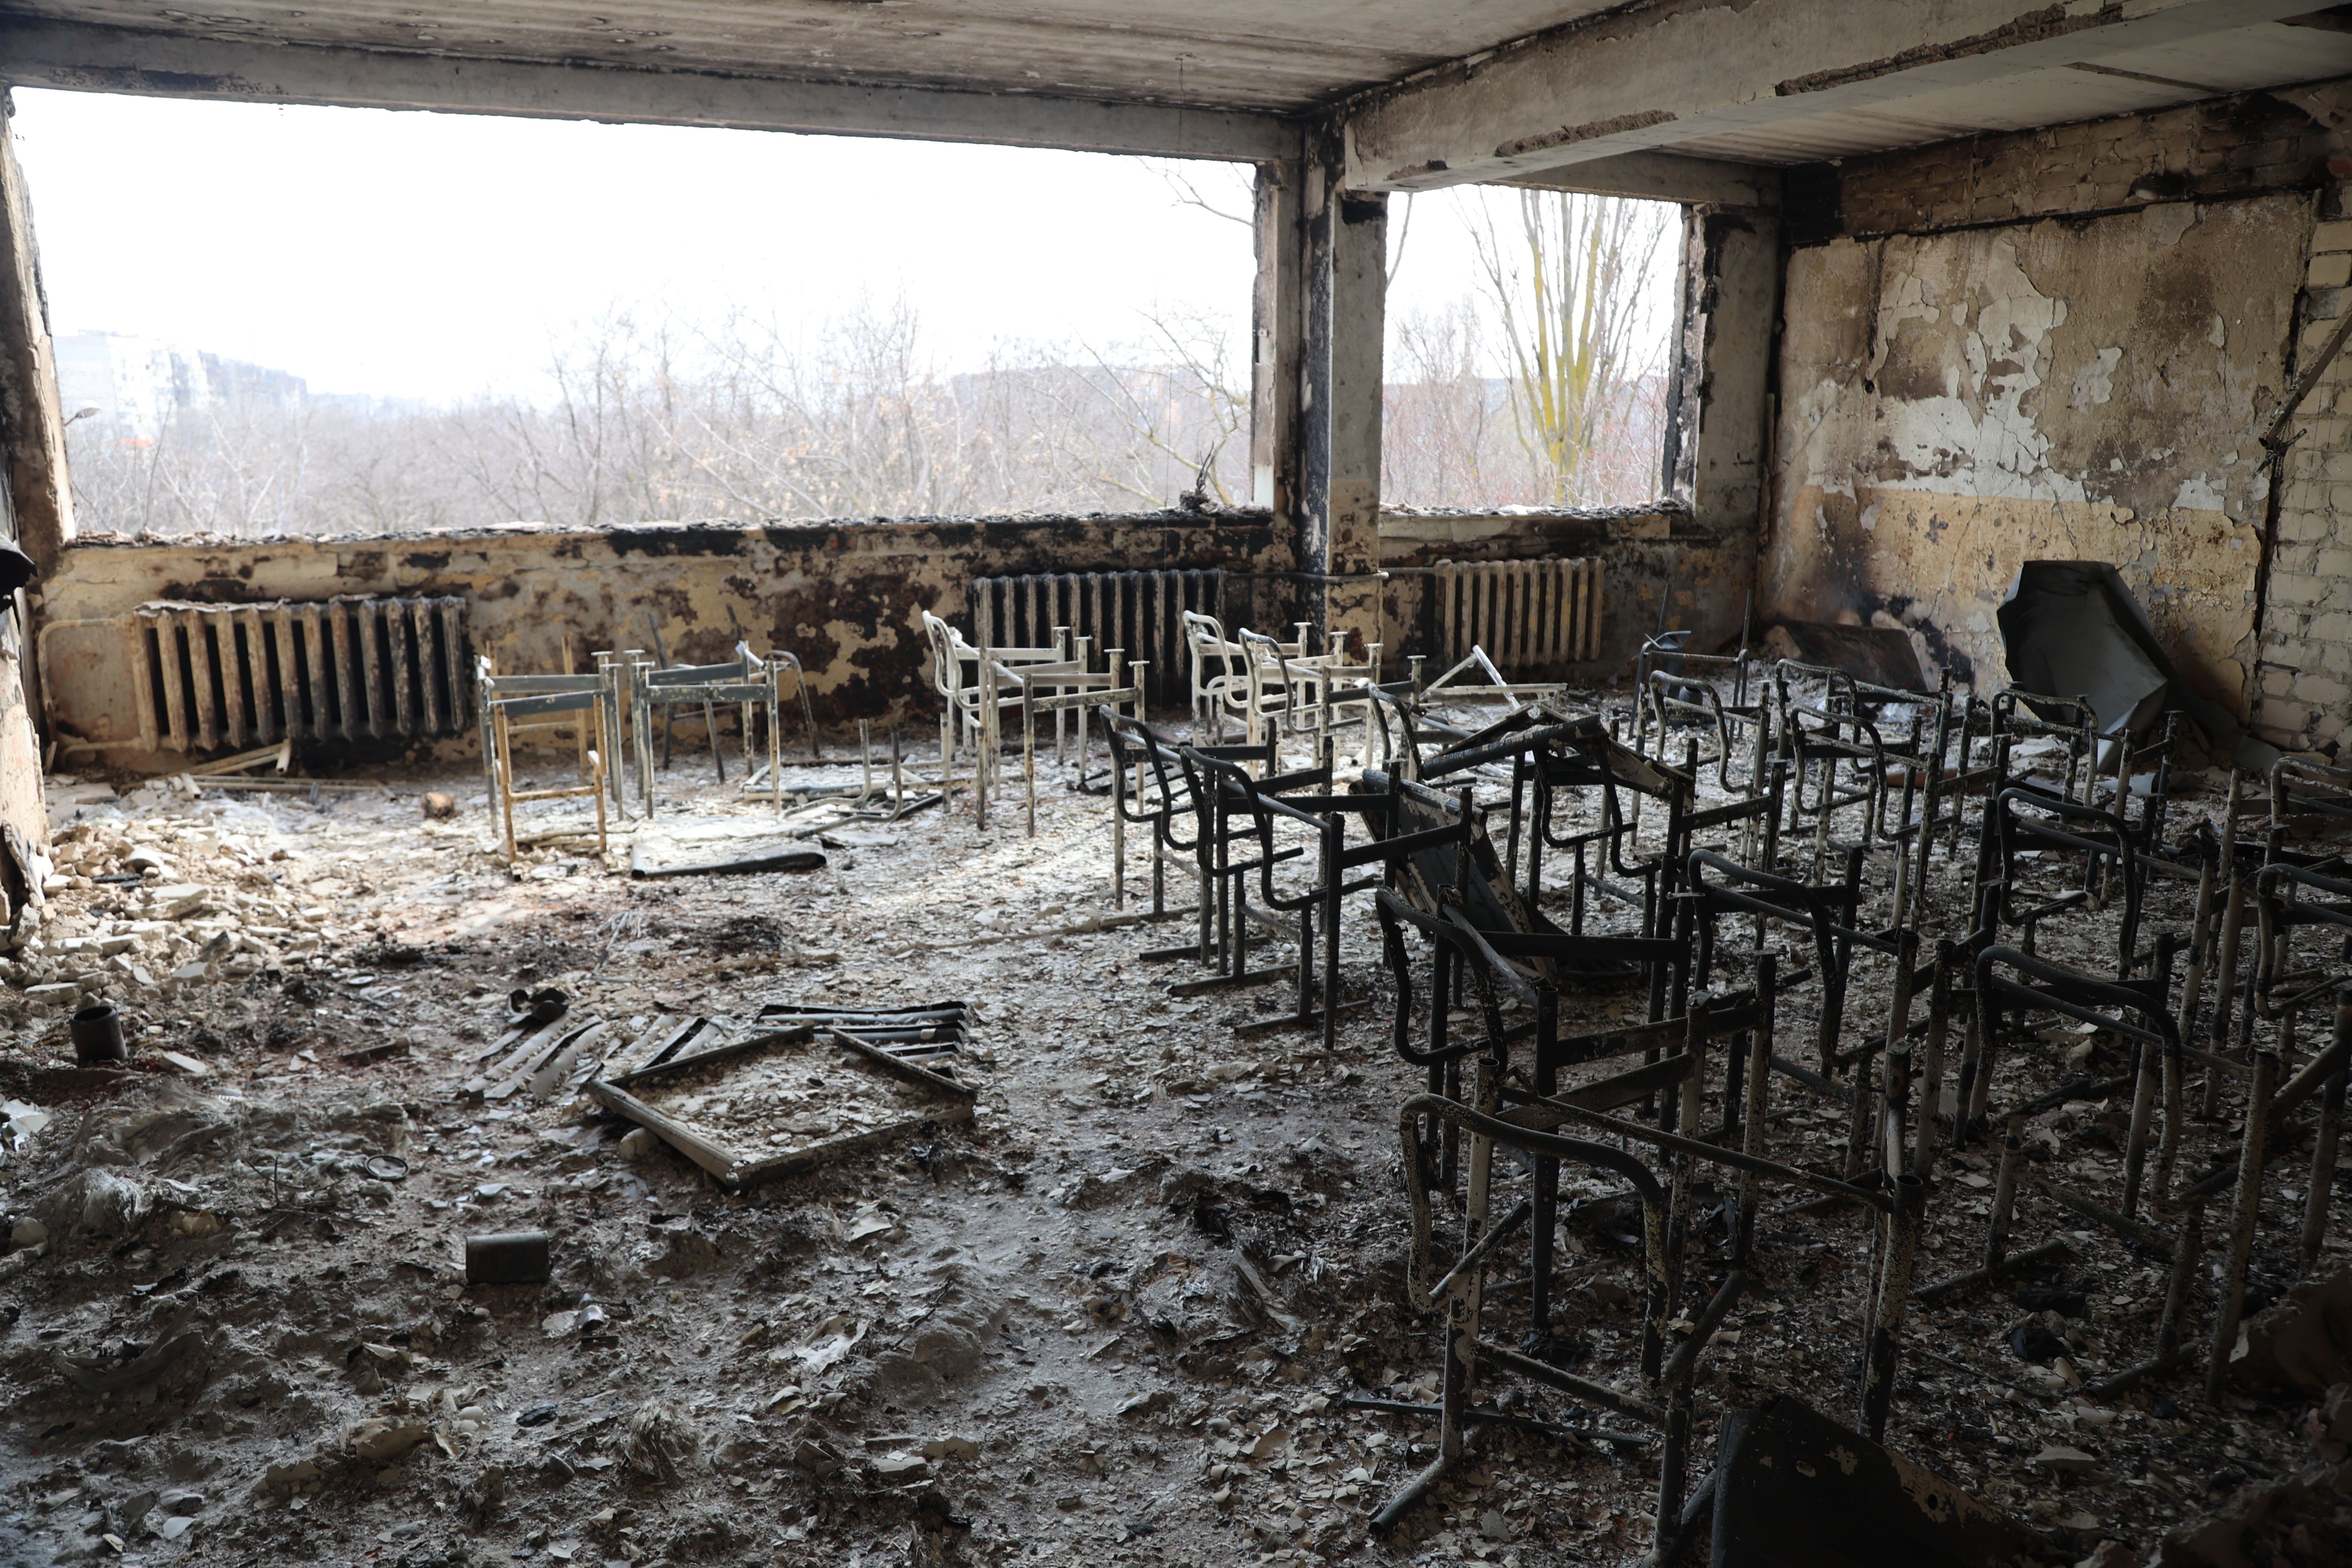     Widok szkoły zniszczonej po ostrzale 29 marca w kontrolowanym przez rosyjskie wojsko i prorosyjskich separatystów ukraińskim mieście Mariupol.